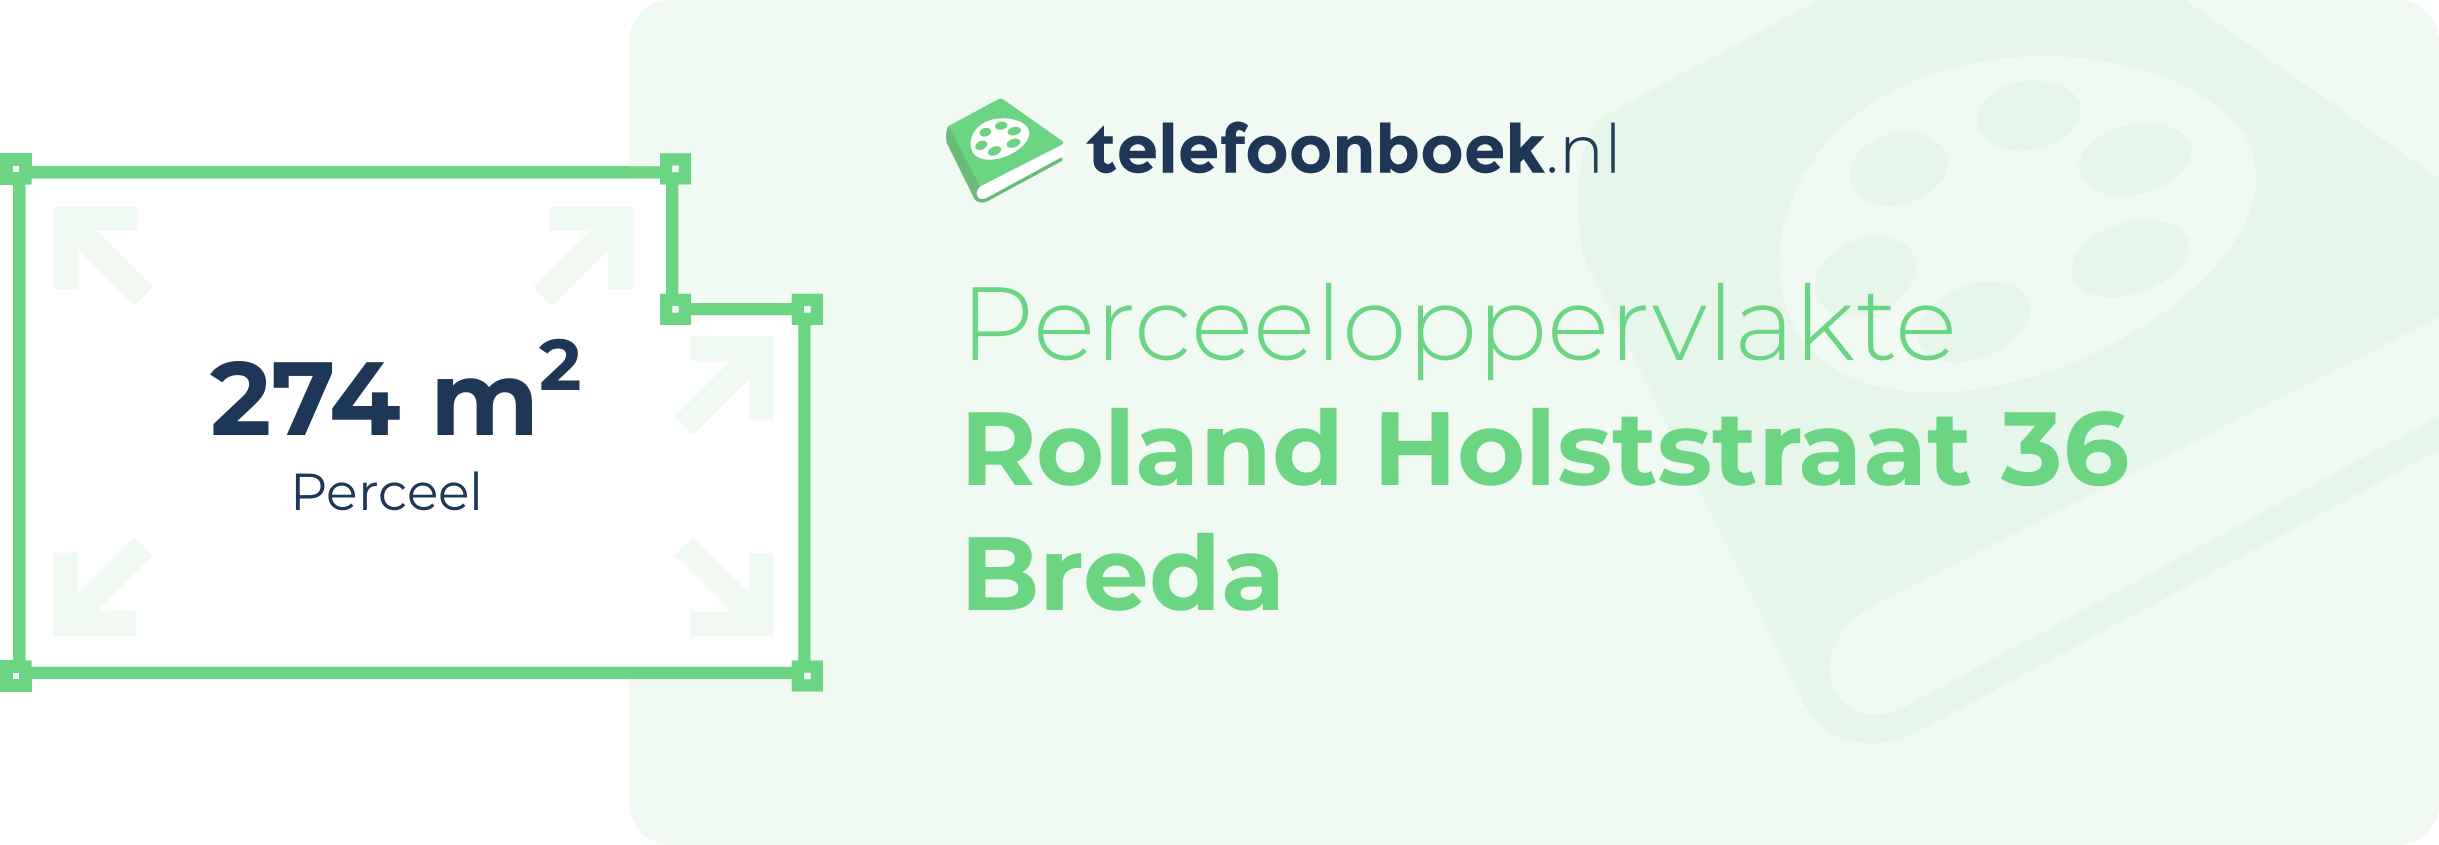 Perceeloppervlakte Roland Holststraat 36 Breda